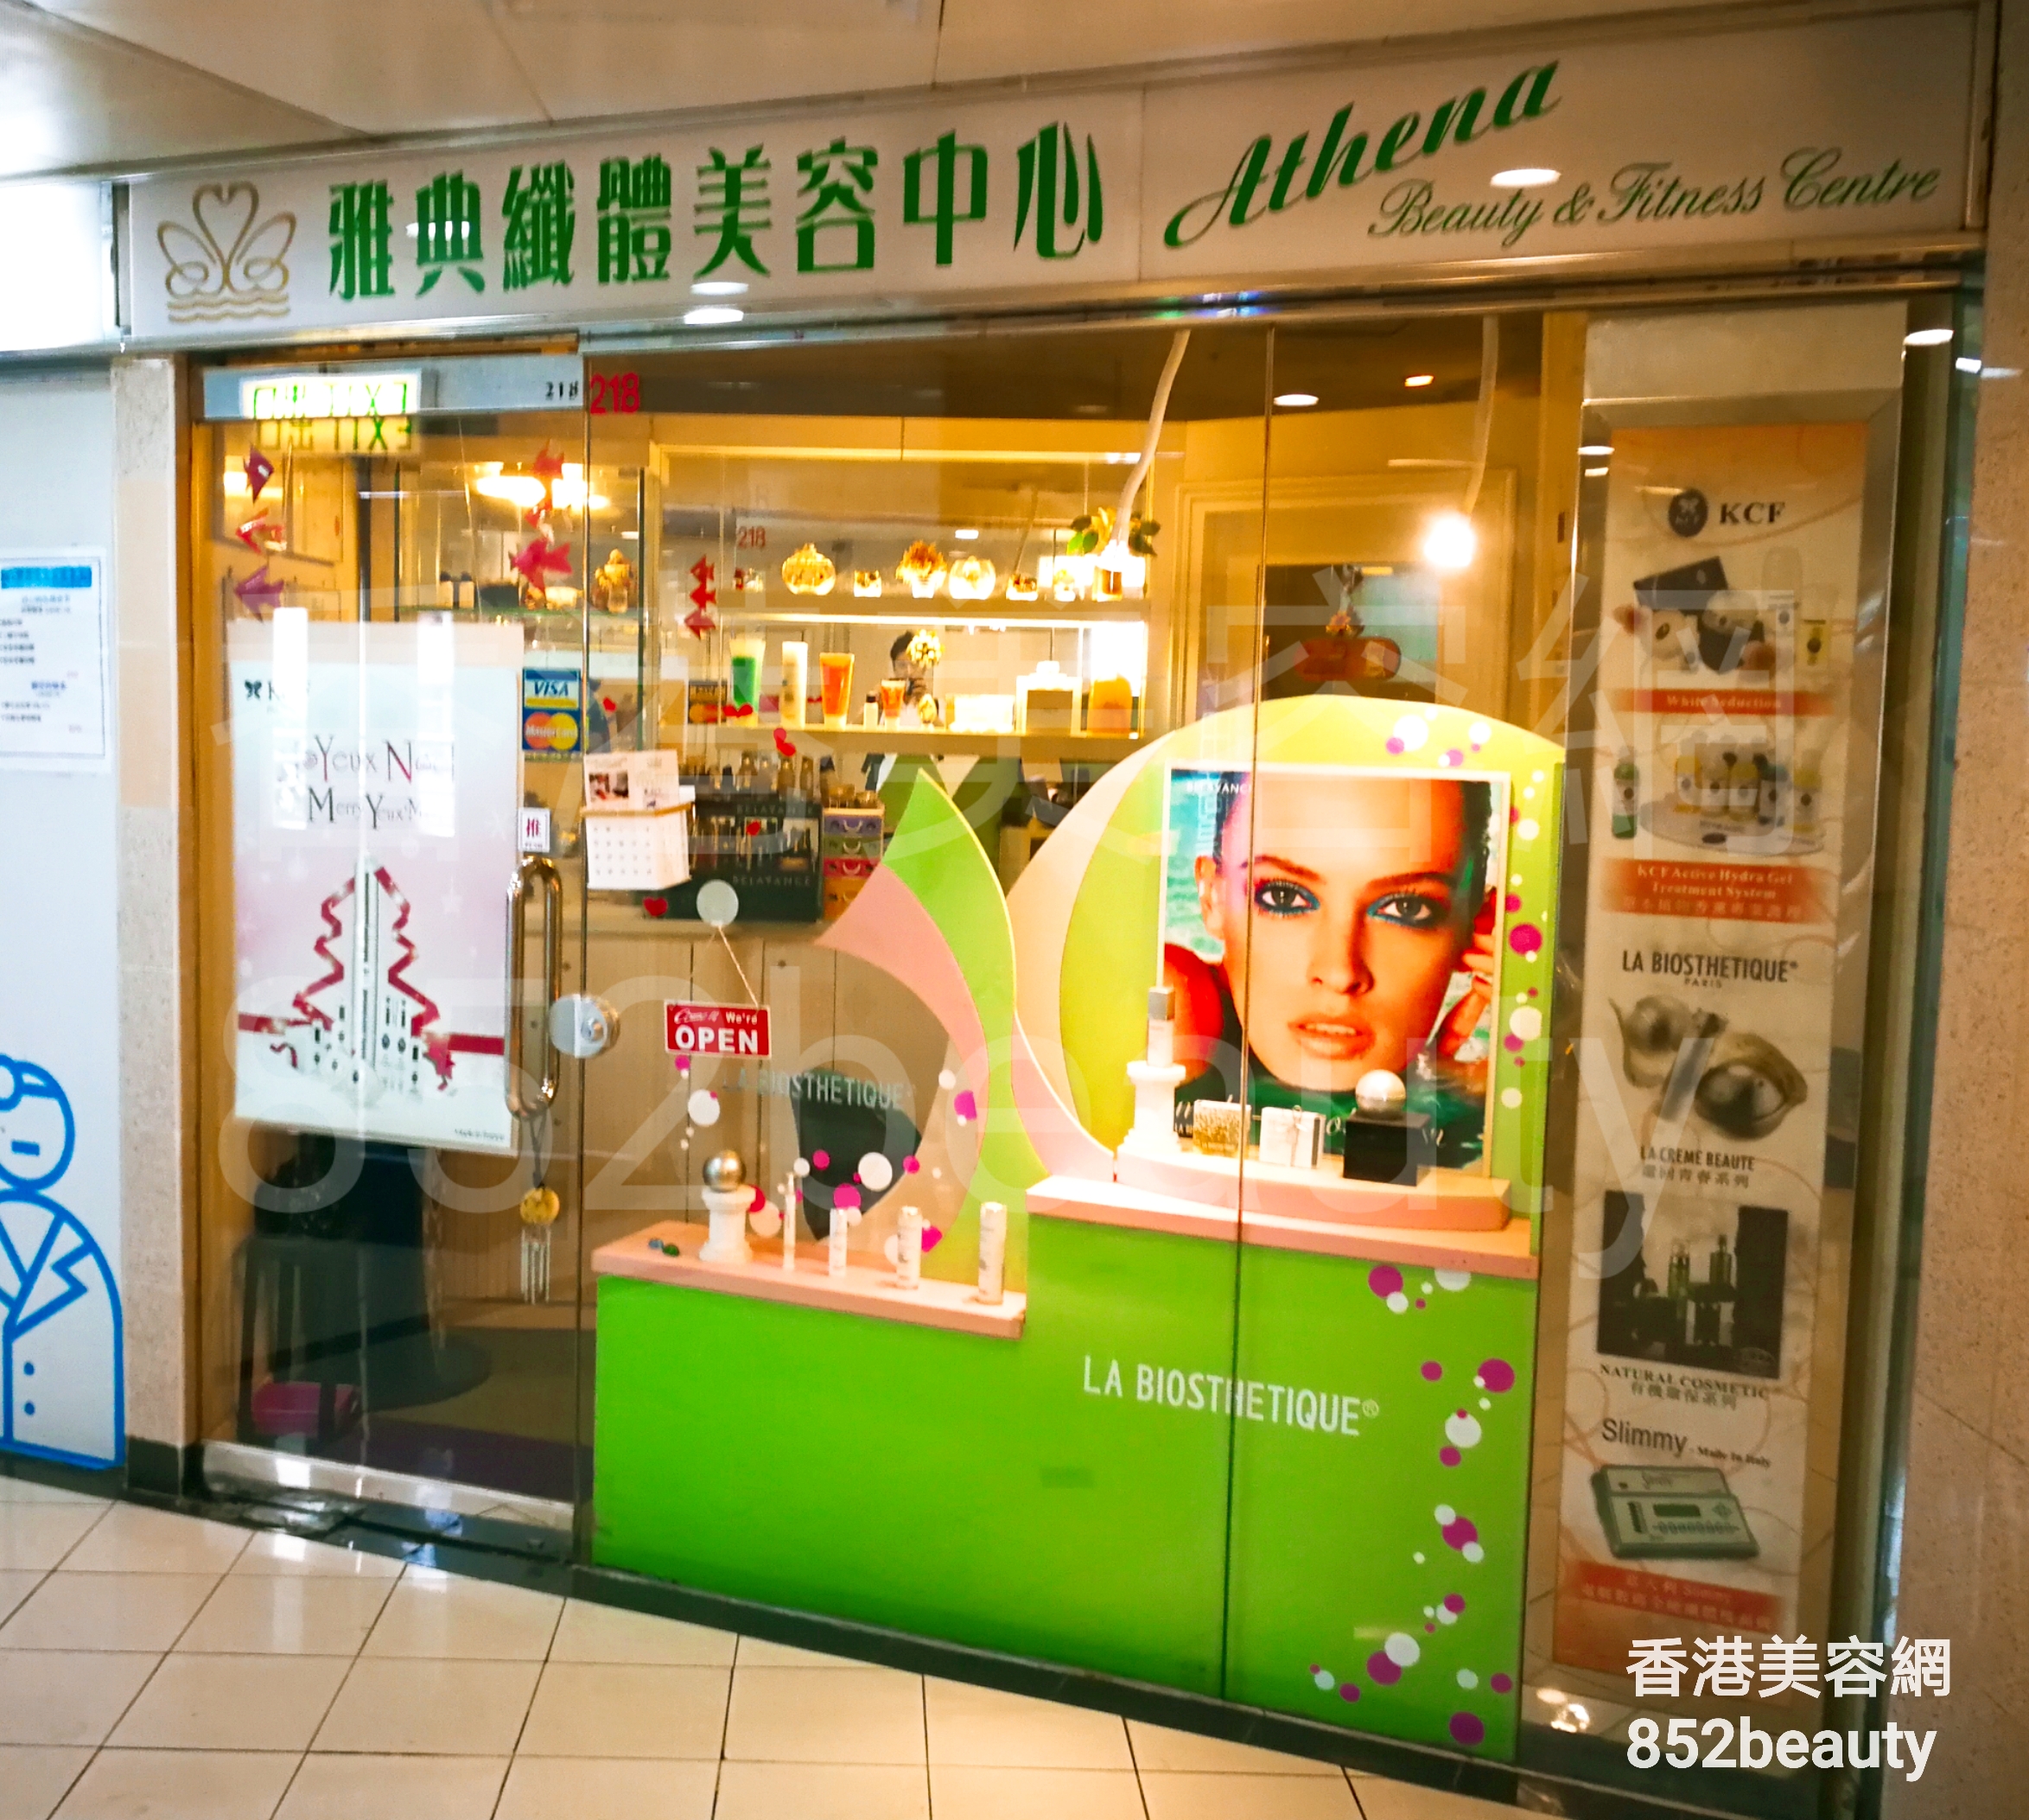 美容院 Beauty Salon: 雅典纖體美容中心